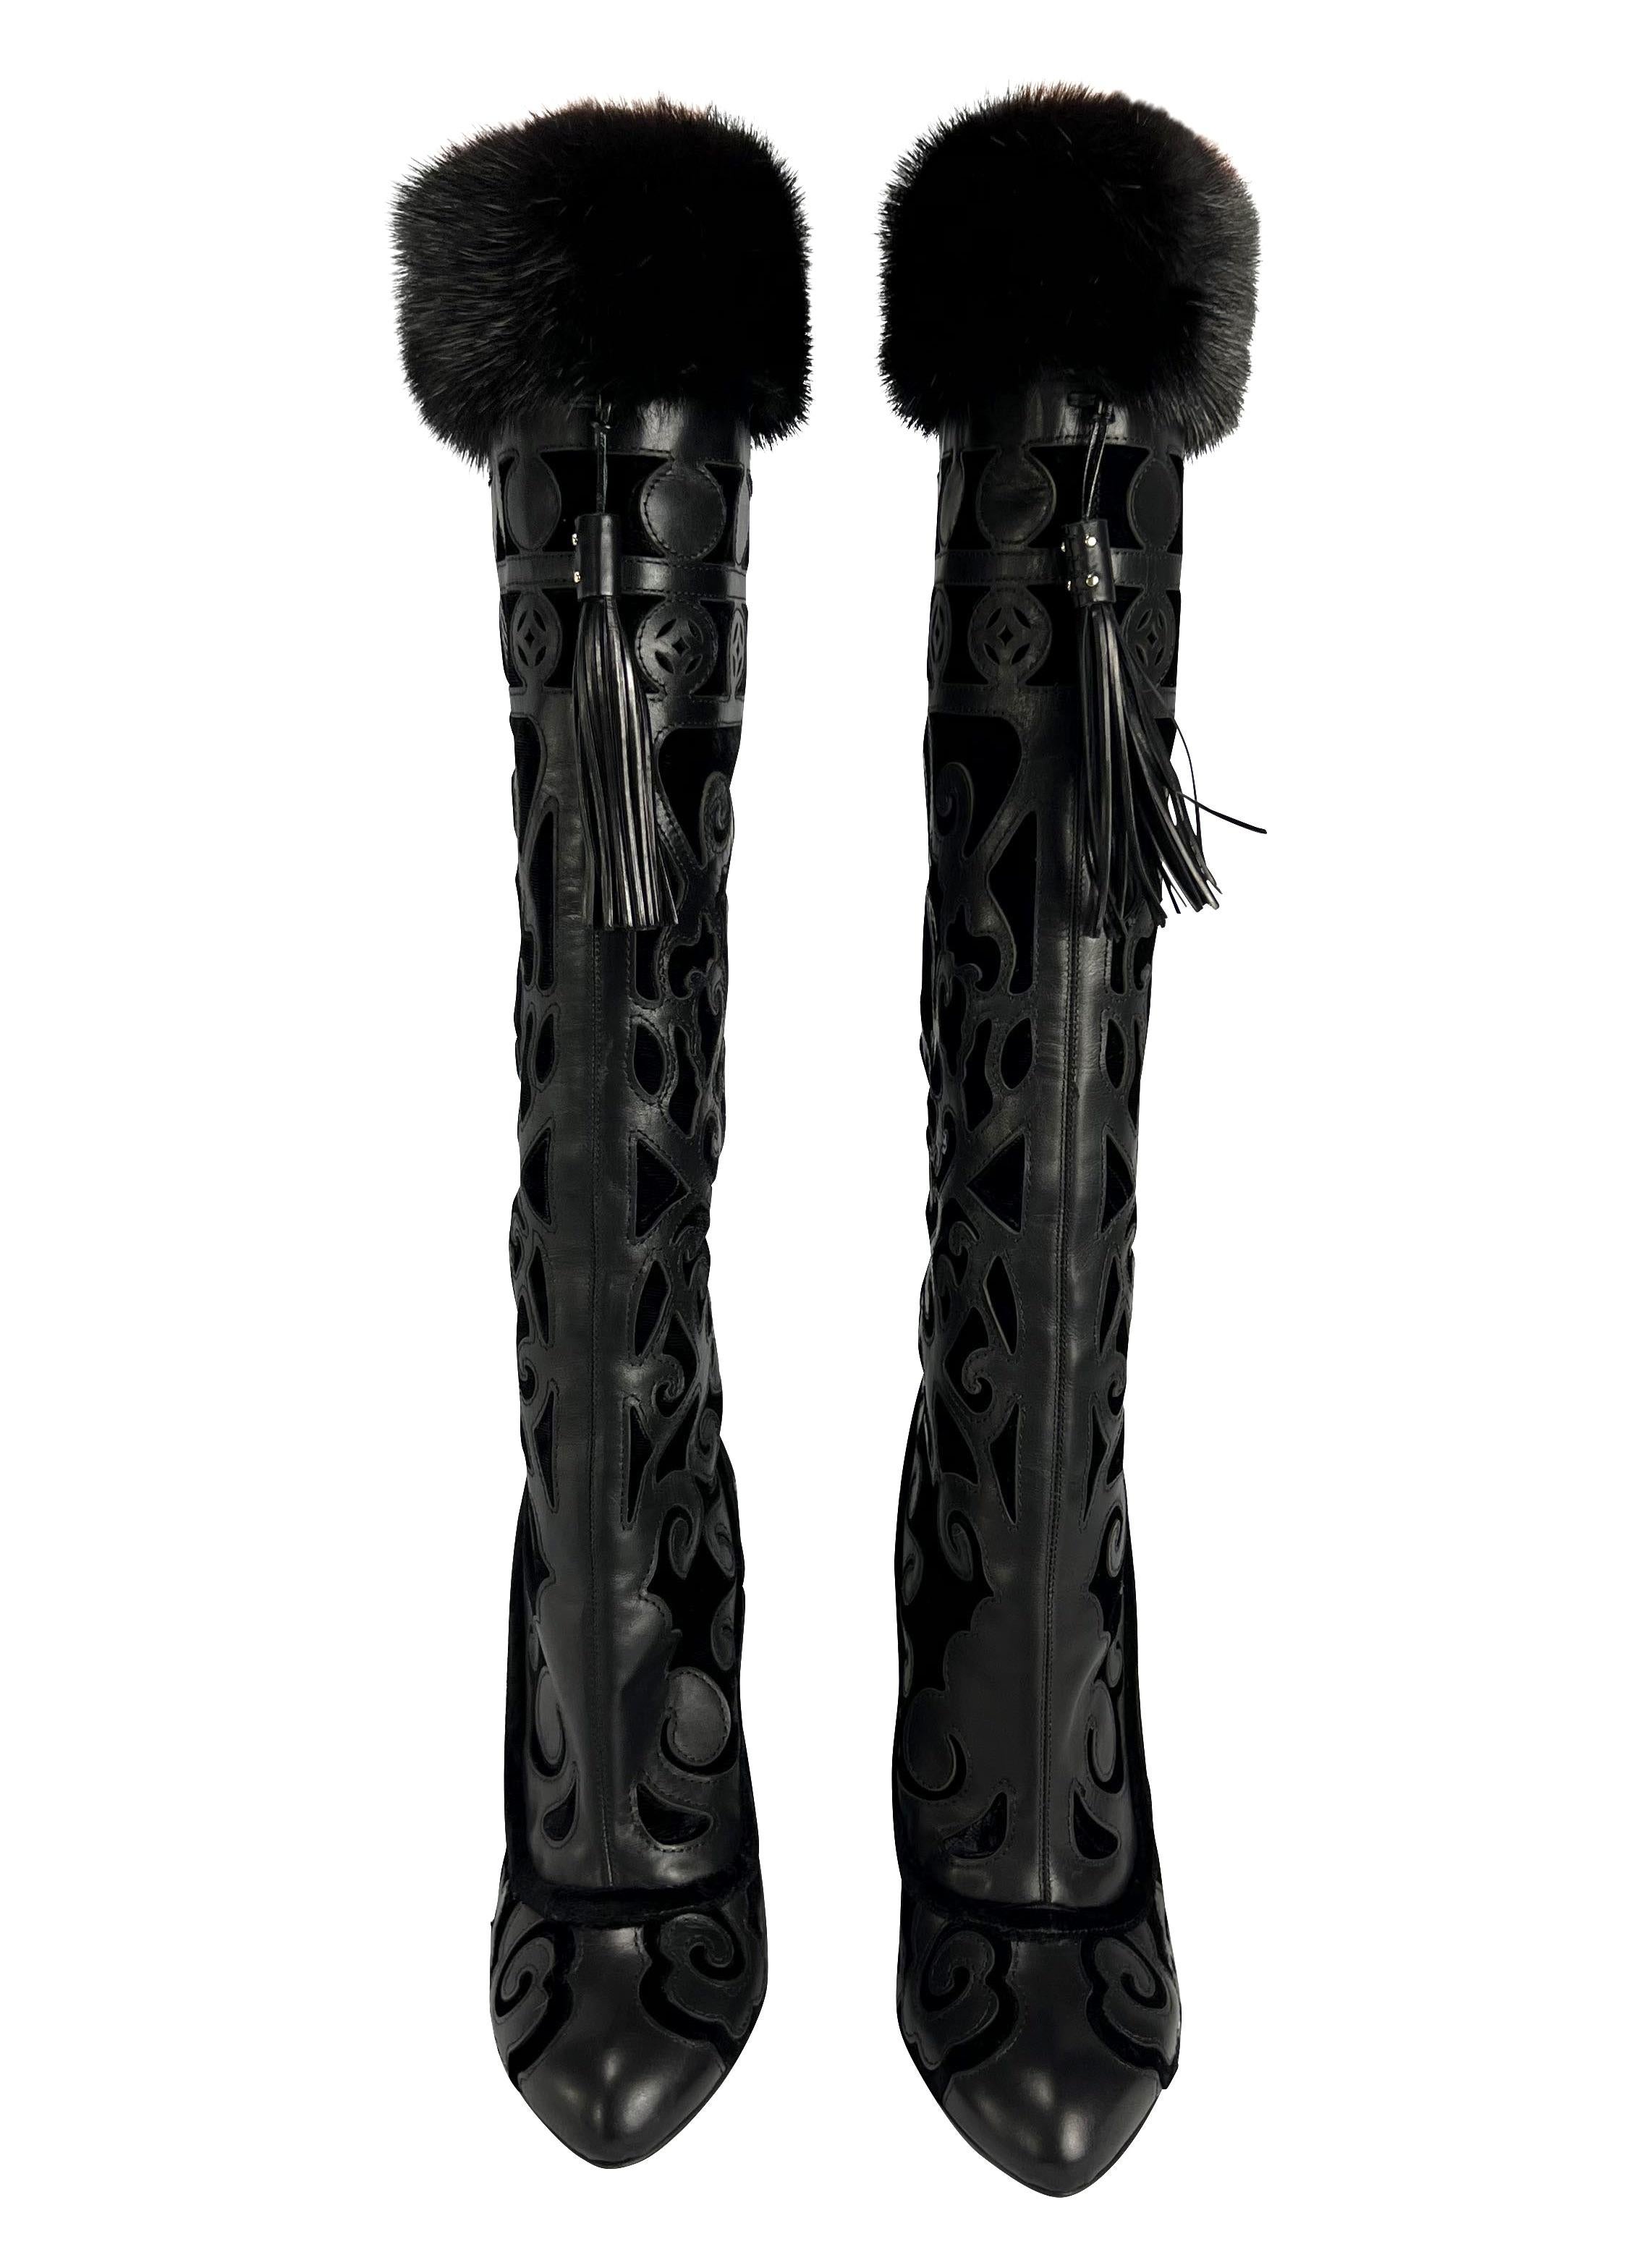 Wir präsentieren ein Paar Yves Saint Laurent Rive Gauche Keilstiefel aus Leder und Pelz, entworfen von Tom Ford. Diese Stiefel sind Teil der Herbst/Winter-Kollektion 2004 und wurden auf dem Laufsteg in Look Nummer 16 von Yasmin Warsame präsentiert.